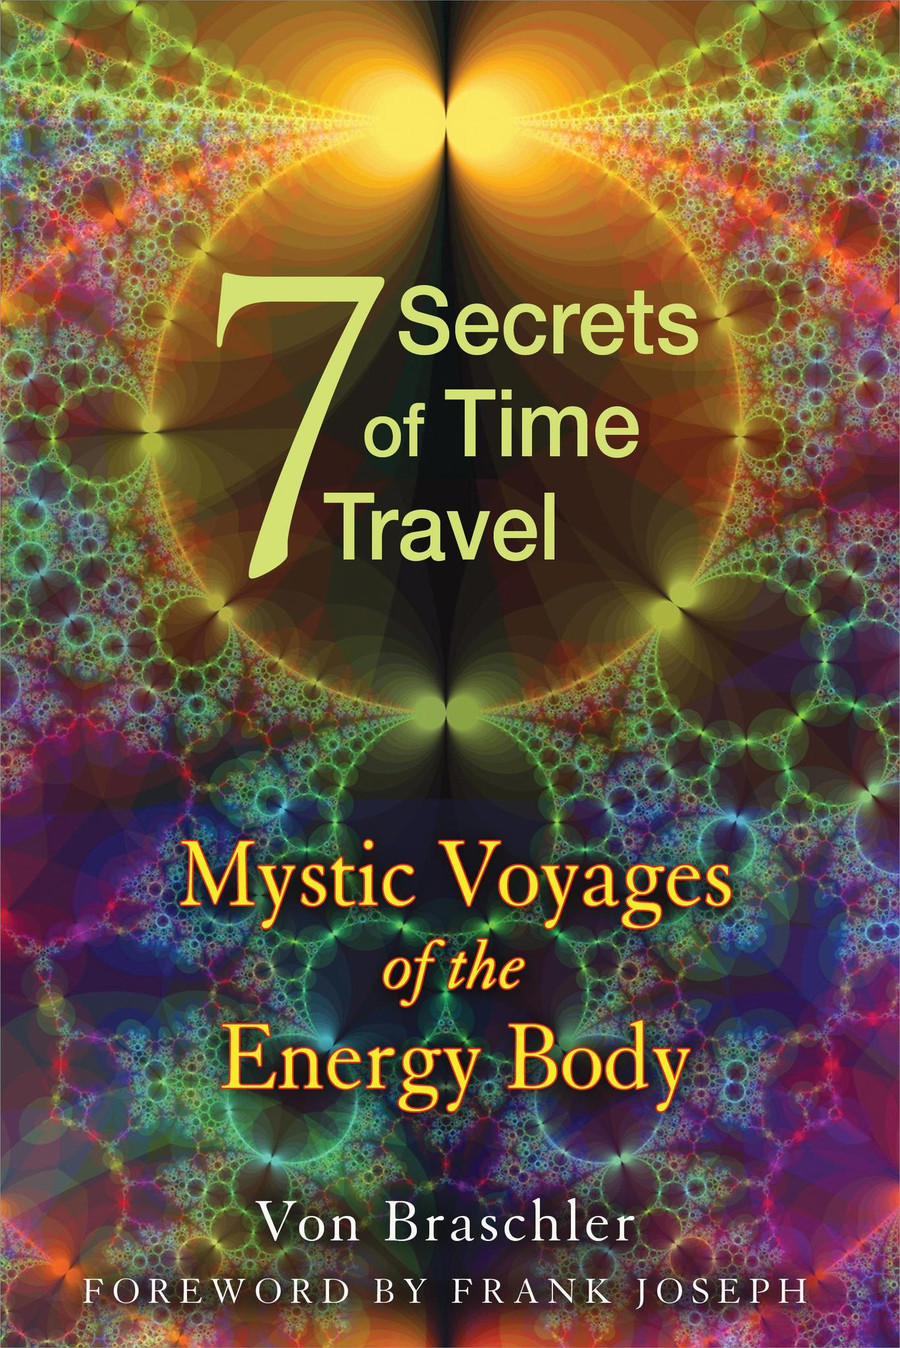 Seven Secrets of Time Travel by Von Braschler